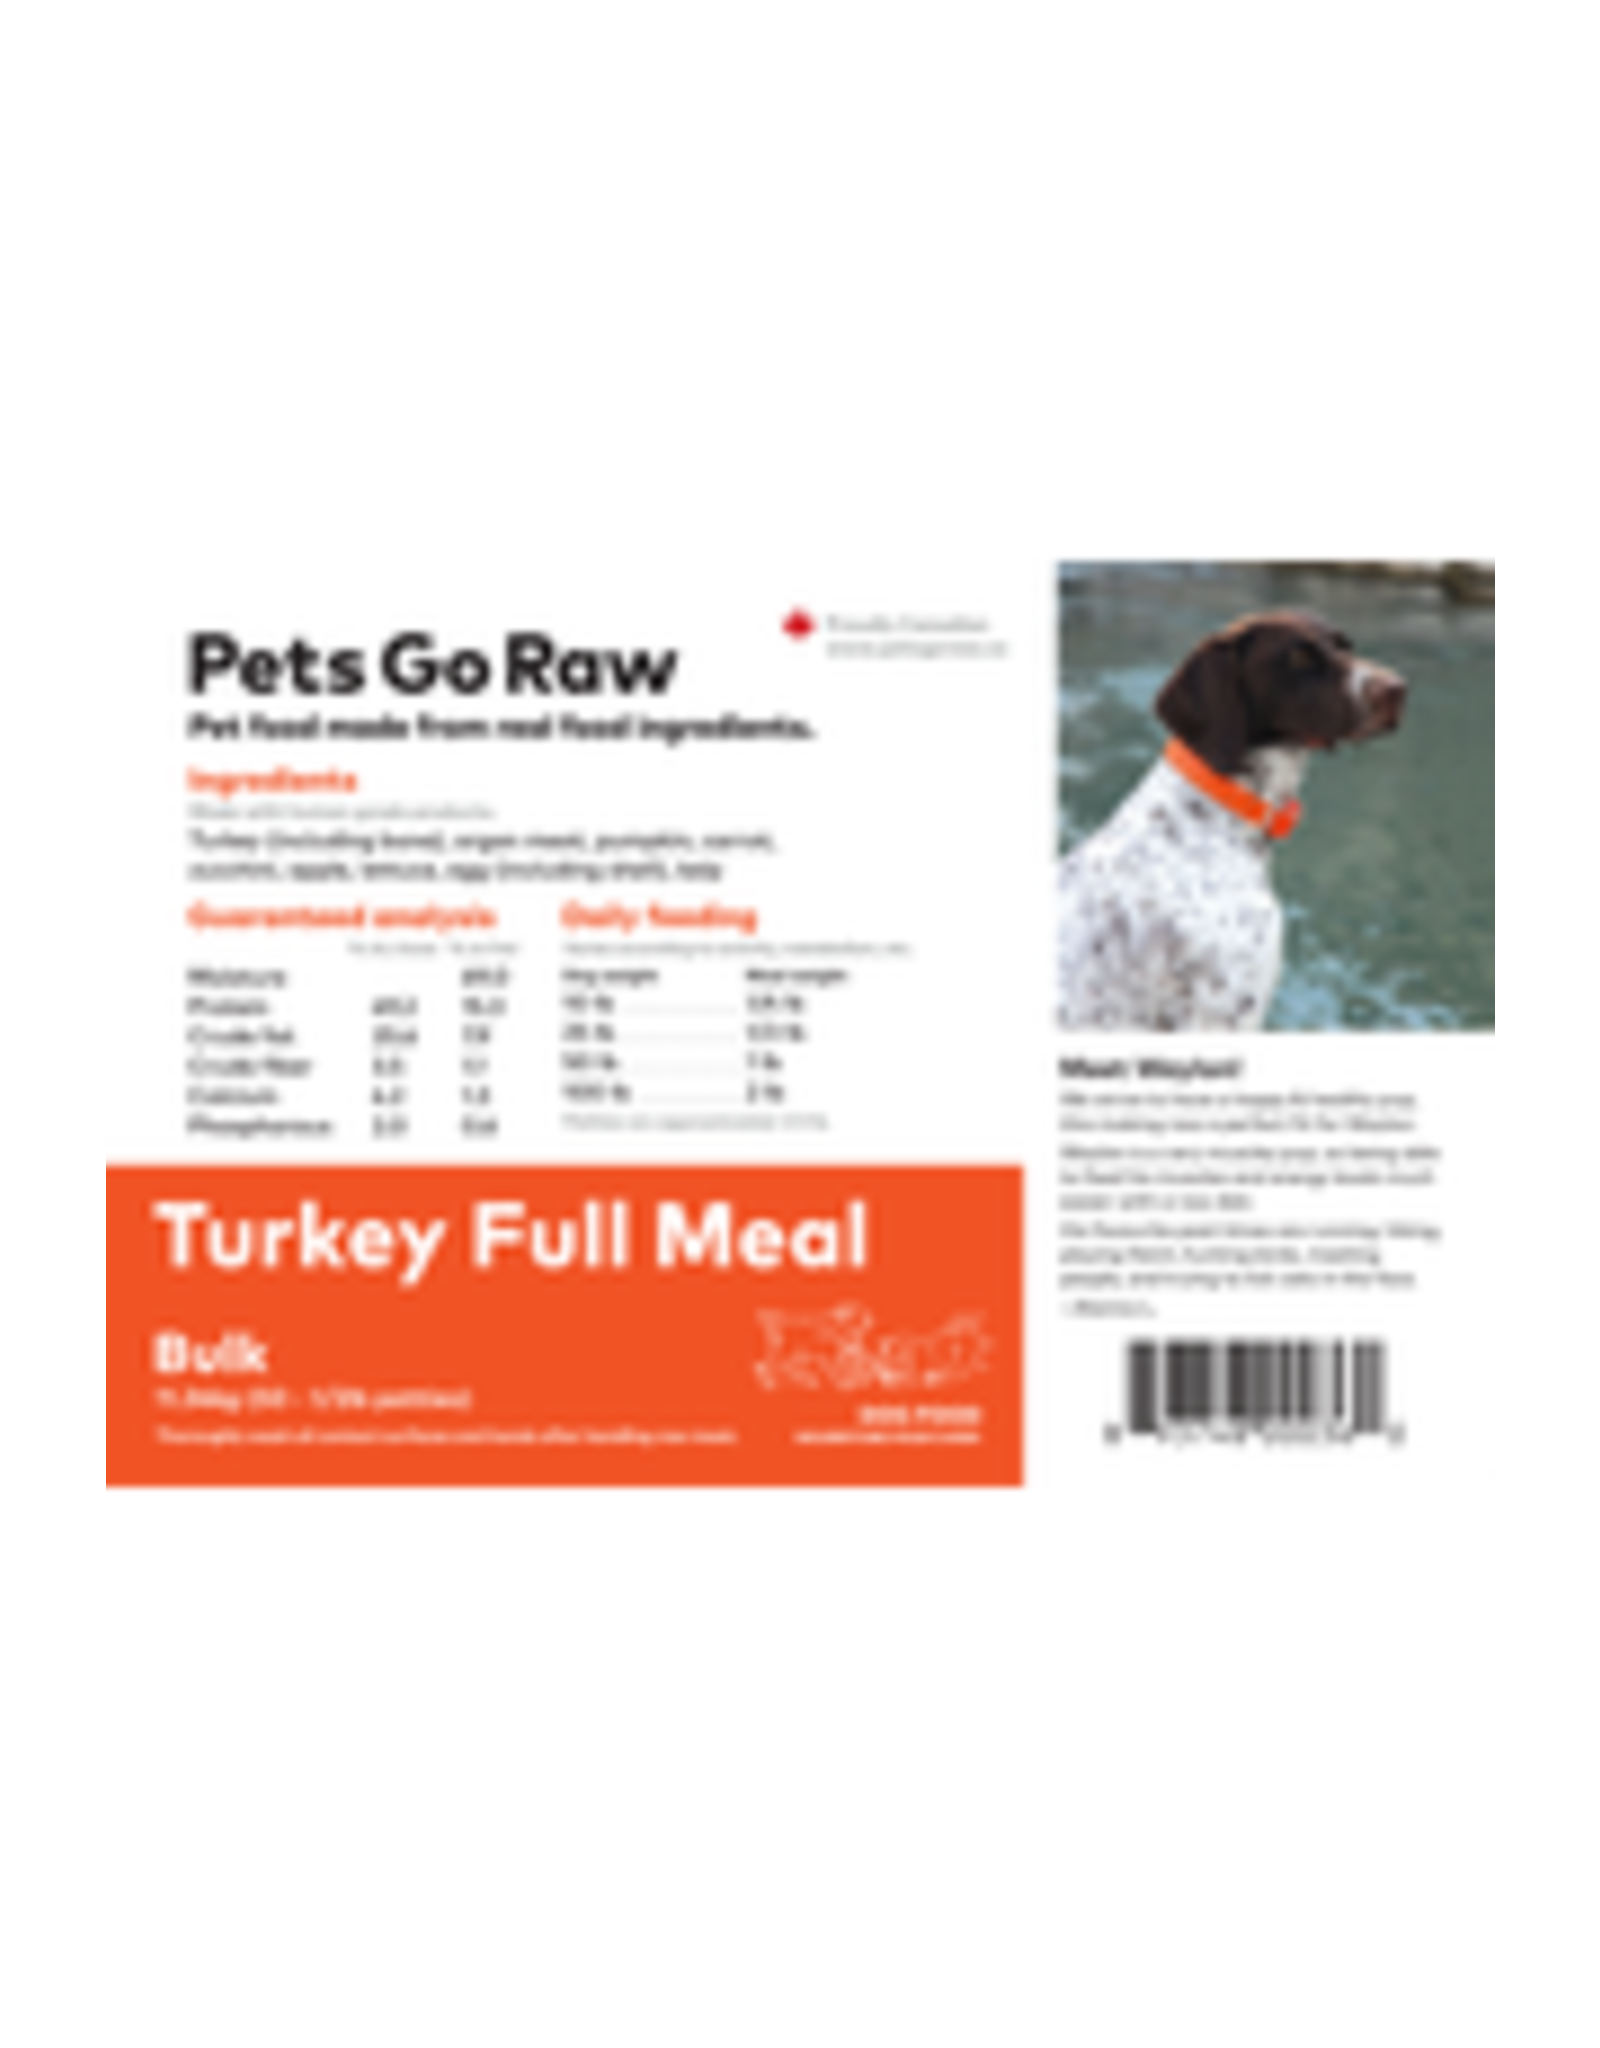 Pets Go Raw Turkey Full Meal 25lb (Approx. 50 Patties)